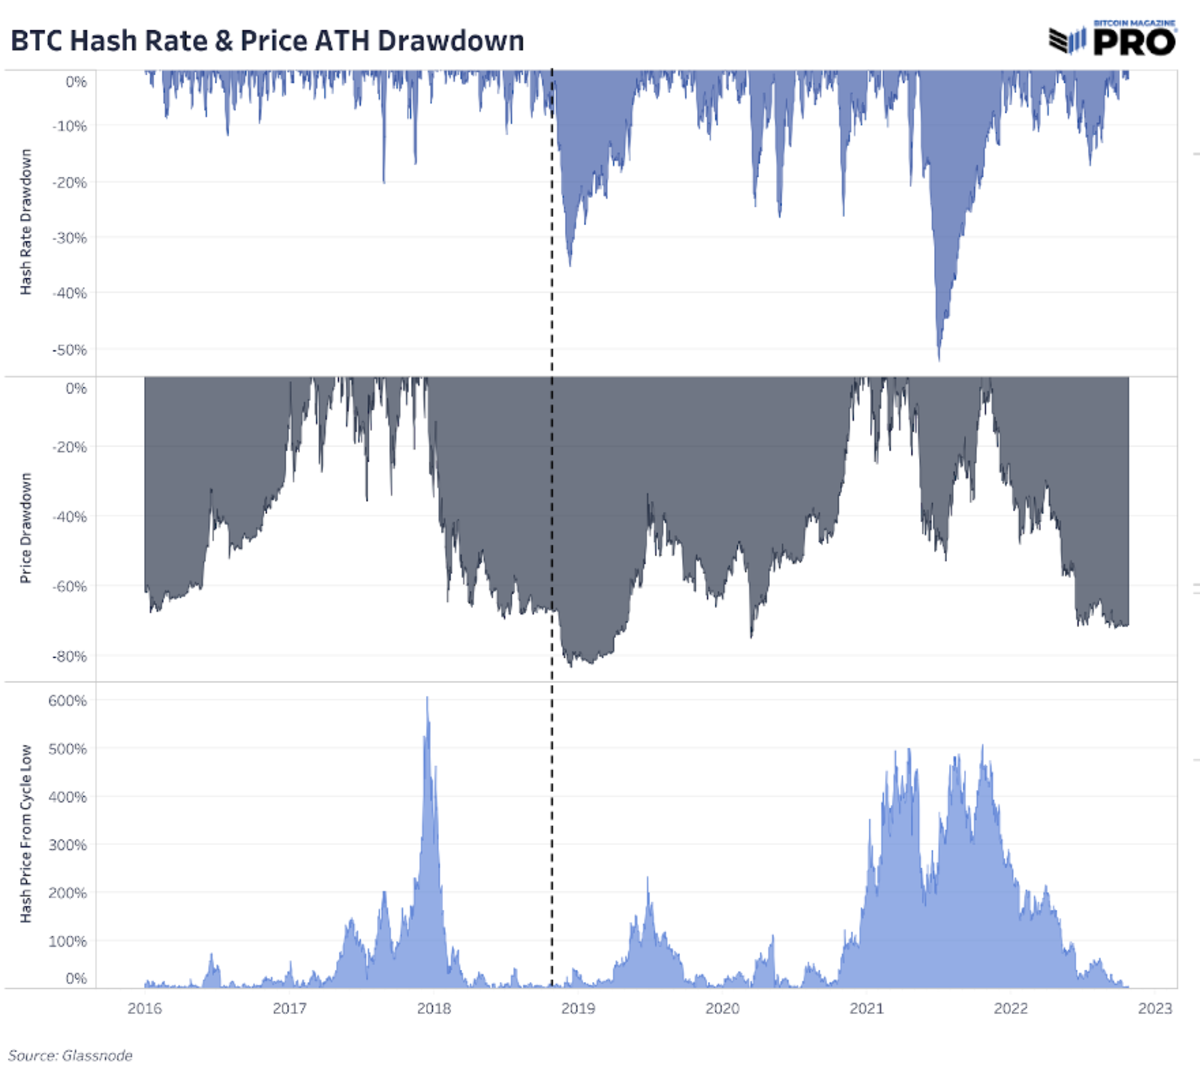 A indústria de mineração de bitcoin está sob pressão à medida que o preço do hash atinge novos mínimos, a taxa de hash atinge novos máximos e o ajuste de dificuldade continua subindo.